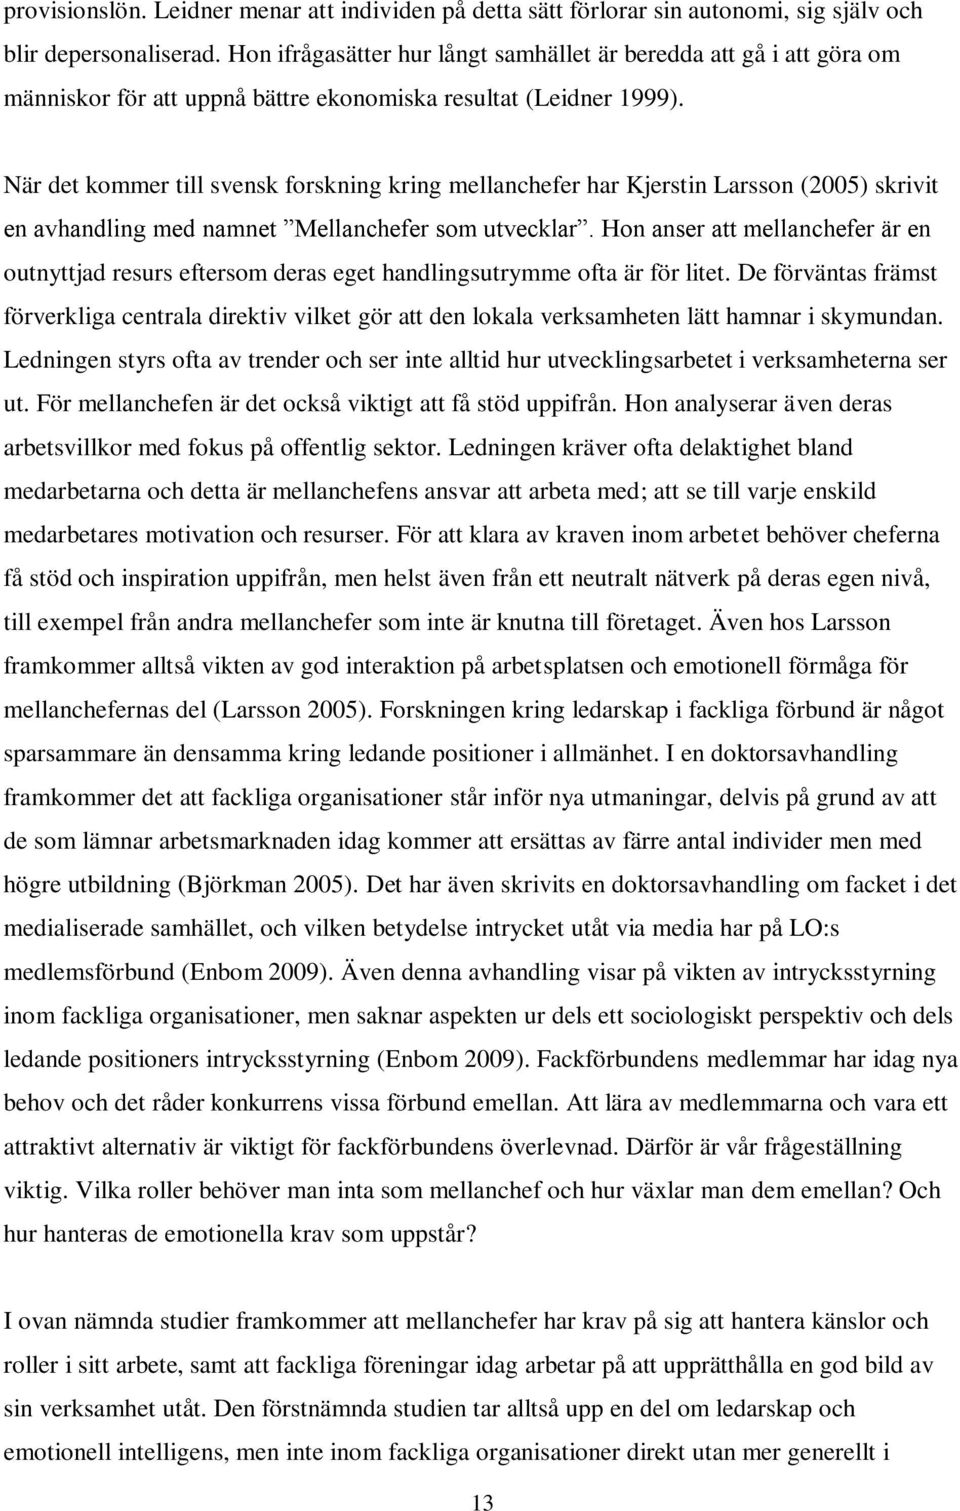 När det kommer till svensk forskning kring mellanchefer har Kjerstin Larsson (2005) skrivit en avhandling med namnet Mellanchefer som utvecklar.